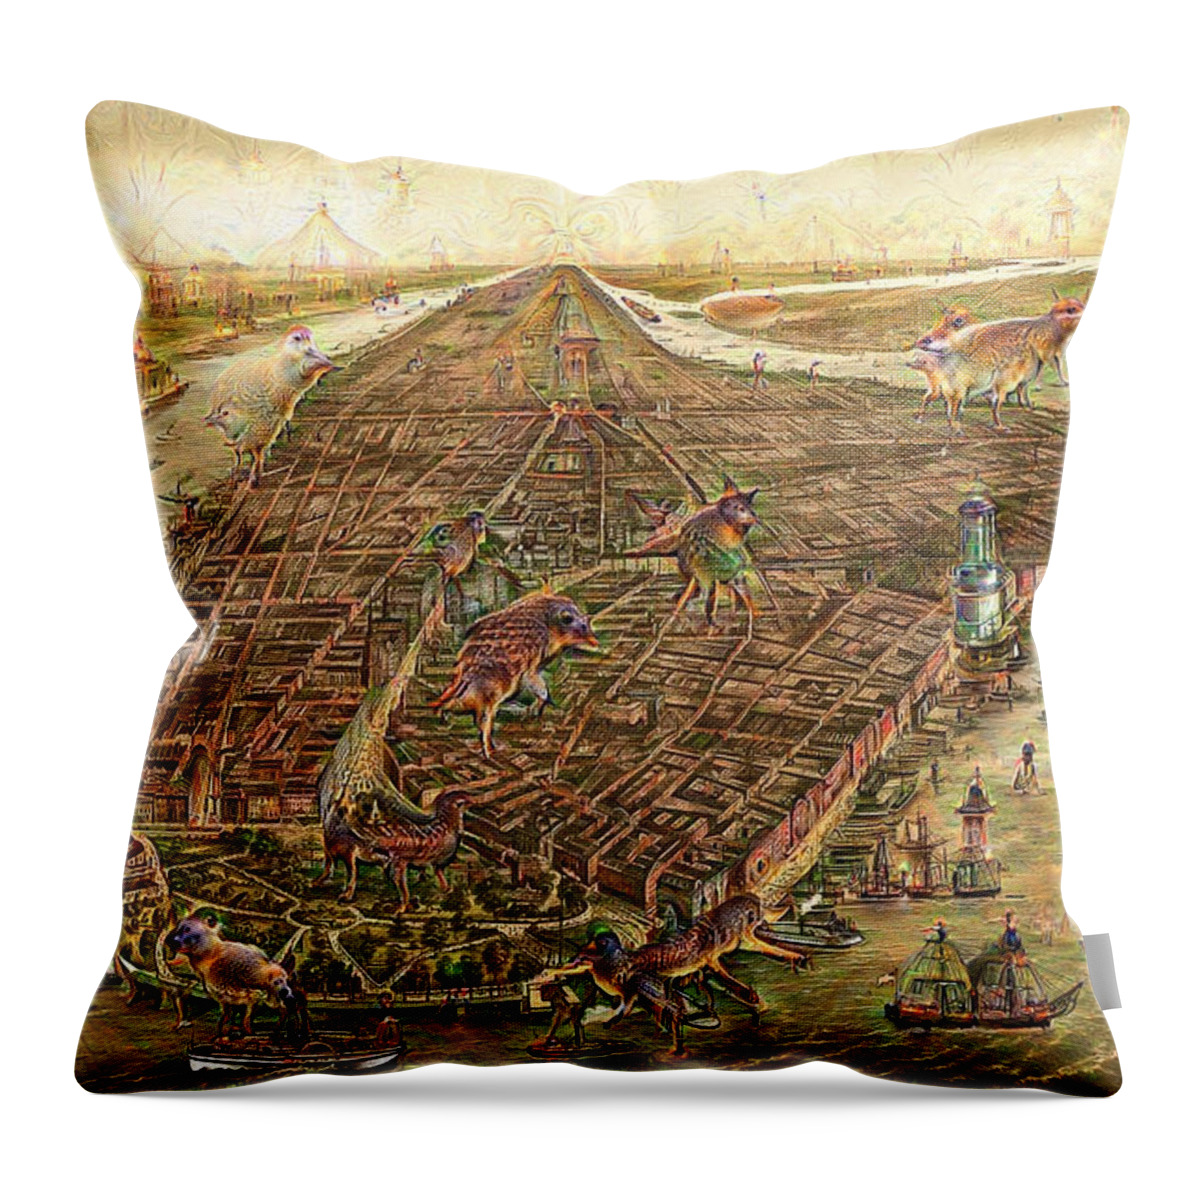 Map Throw Pillow featuring the digital art City map New York Manhattan 1870 Deep Dream by Matthias Hauser